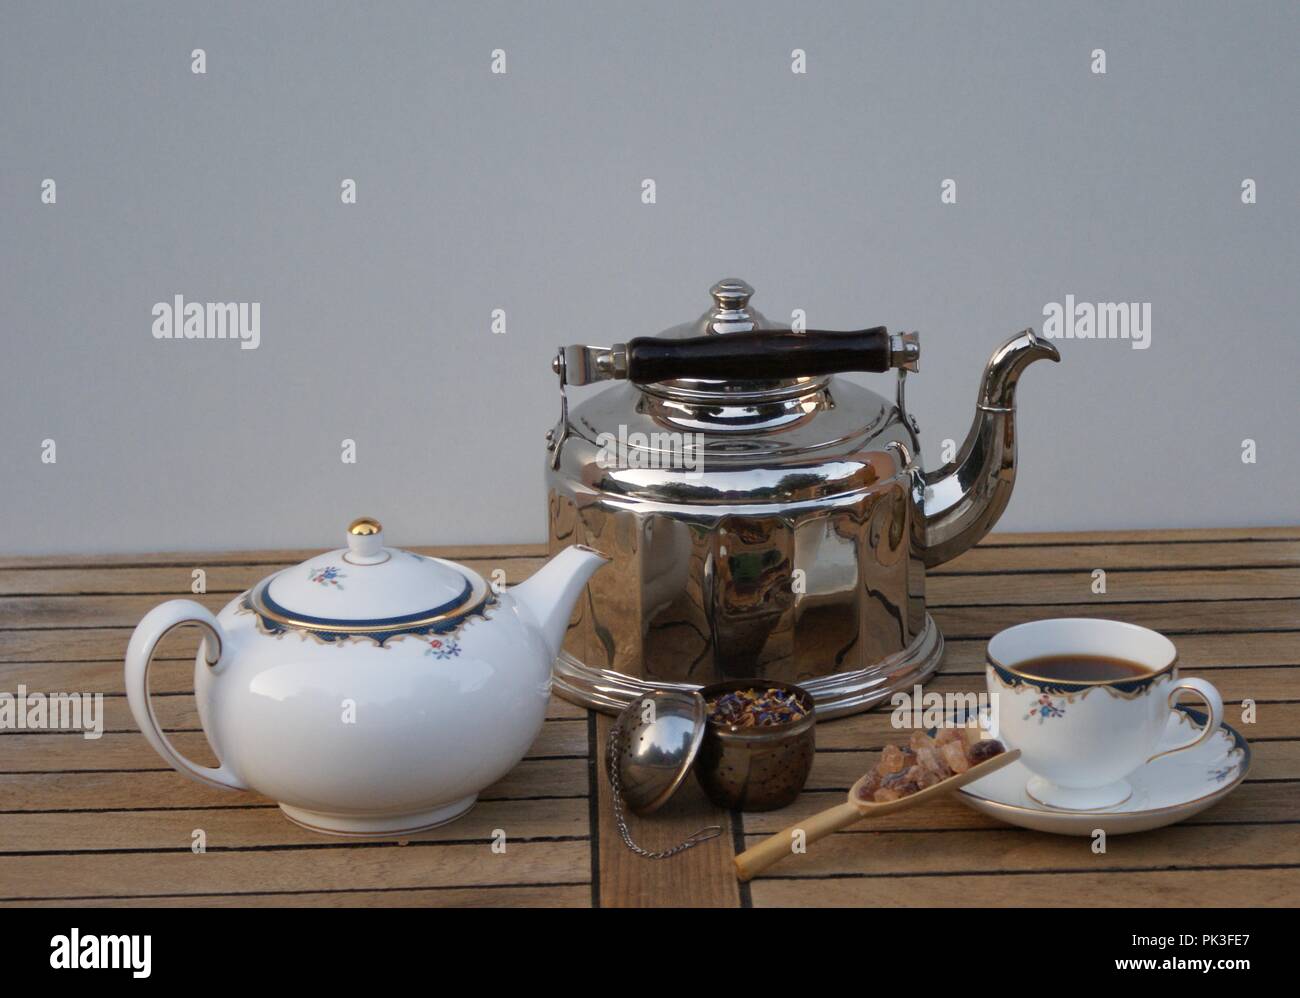 Ancora in vita con un cromo bollitore d' acqua, porcellana inglese, tè  infusore e scoop con la caramella Foto stock - Alamy